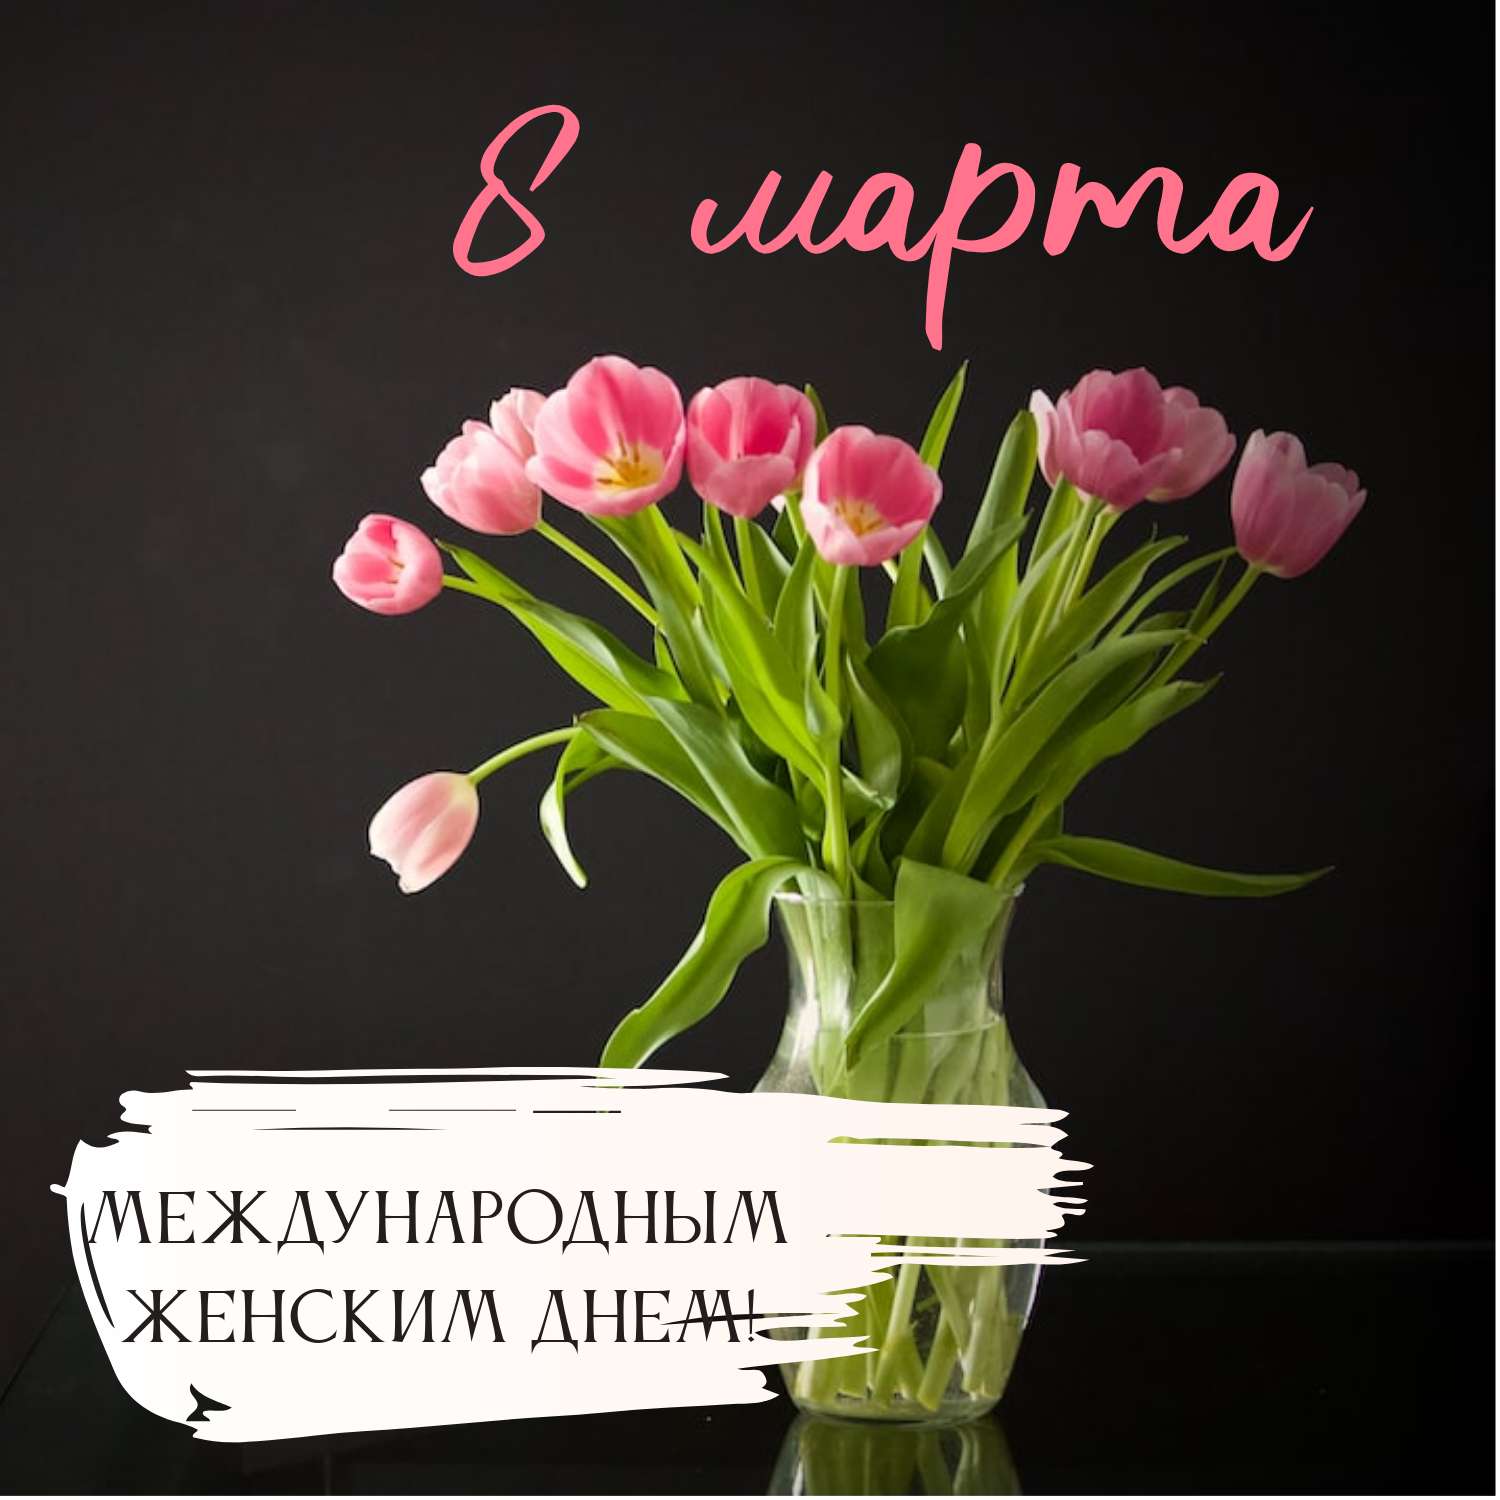 Милая публикация для соцсетей в день 8 марта с розовыми тюльпанами на темном фоне